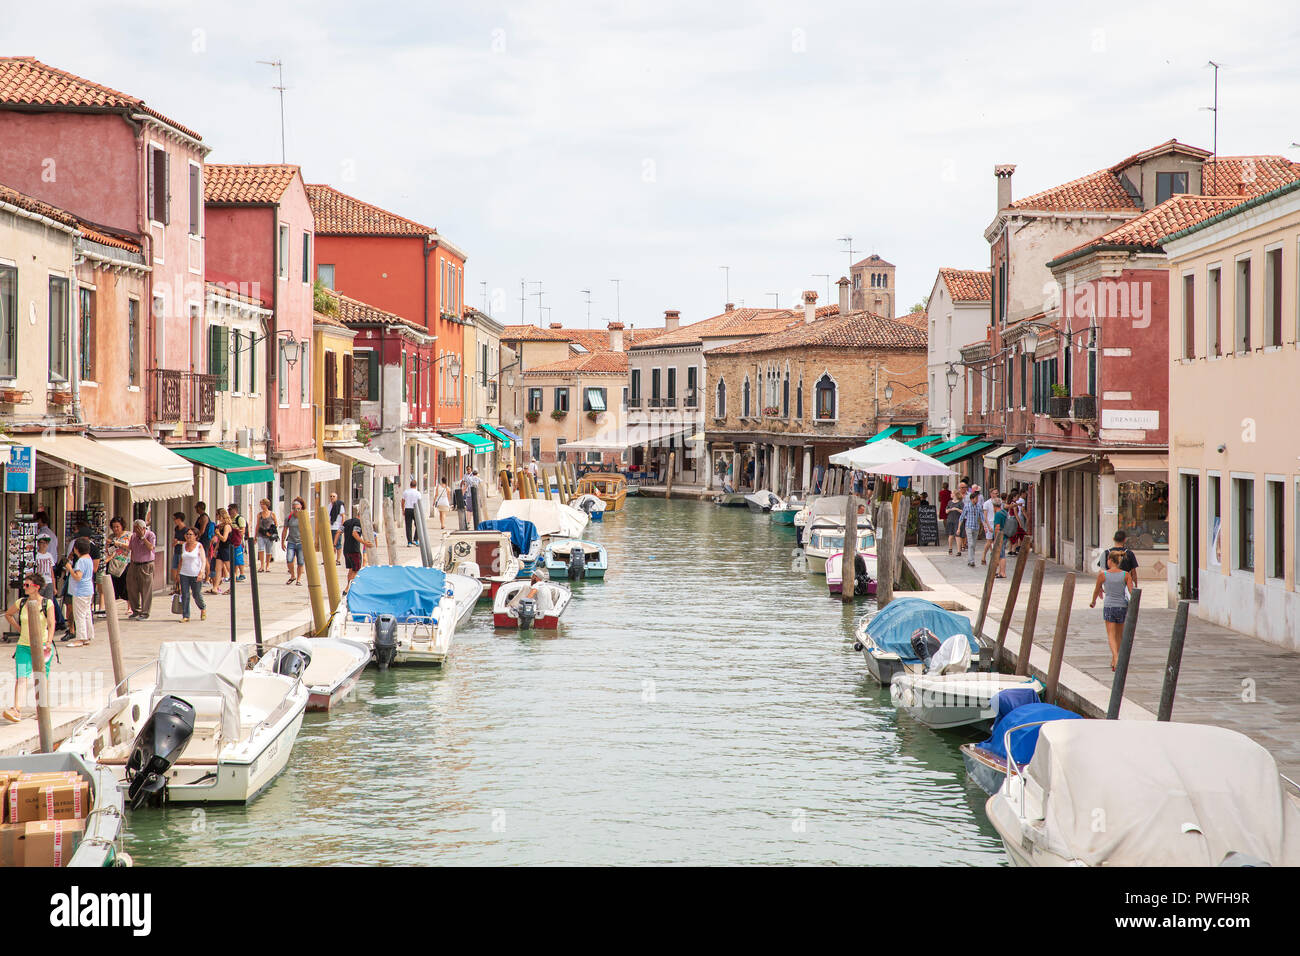 Fondamenta dei Vetrai, einer der wichtigsten Straßen auf der Insel Murano, Venedig, Italien. Stockfoto